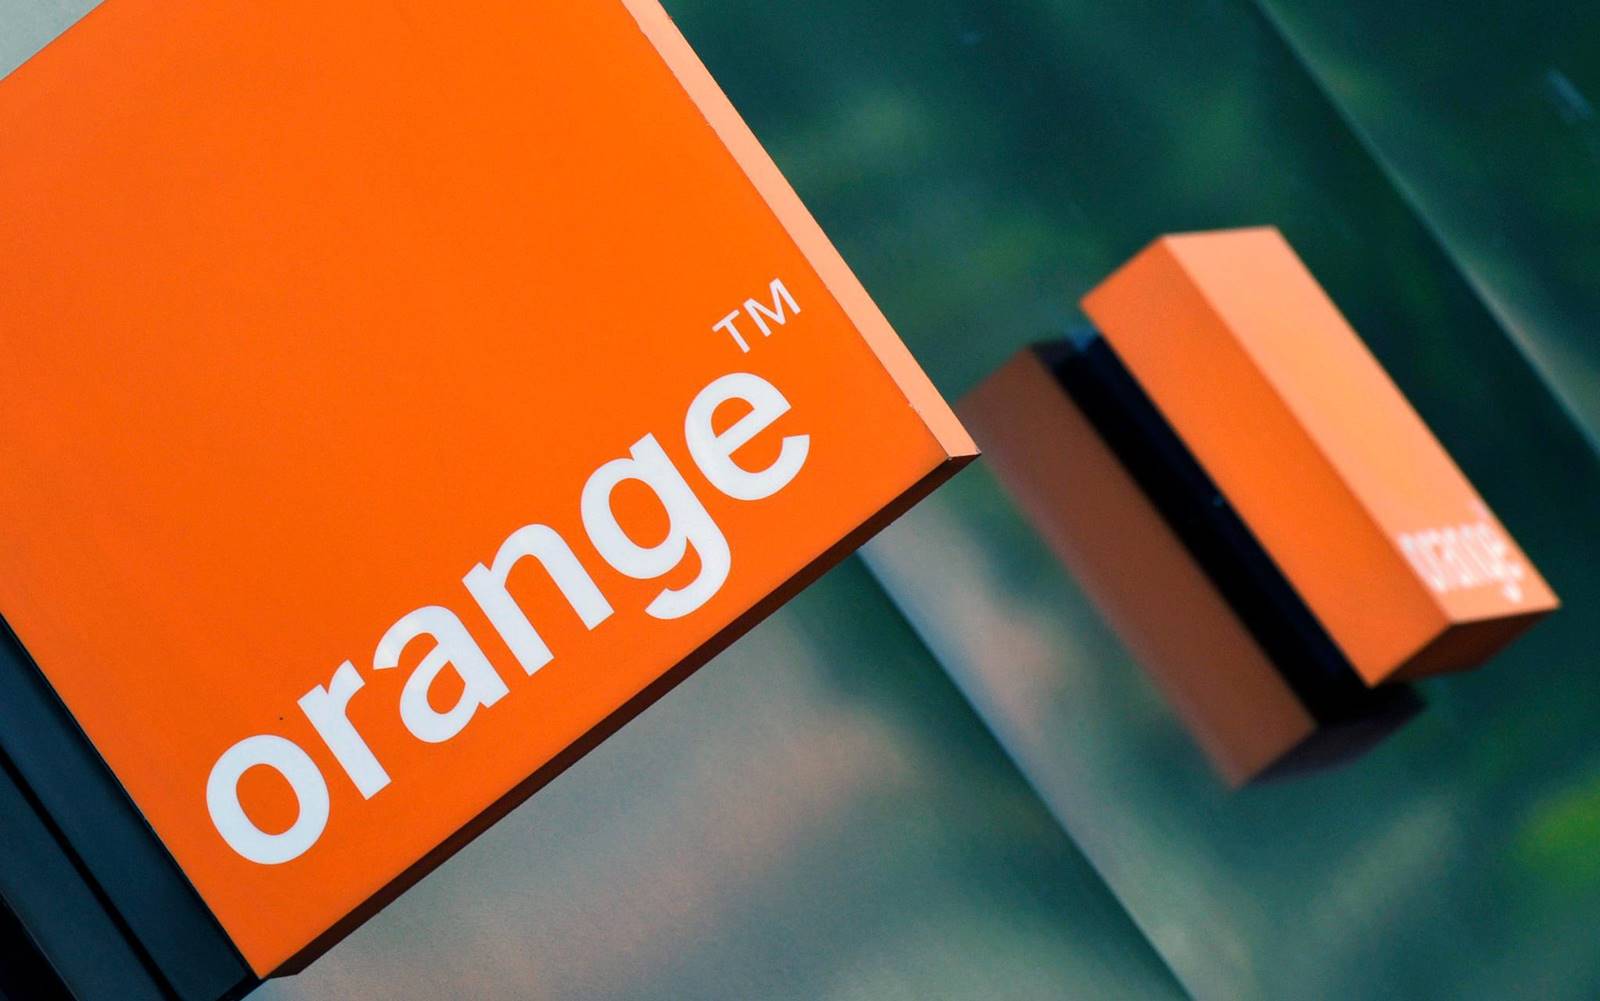 Orange Rumänien överraskar i helgen med utmärkta kampanjer 376779